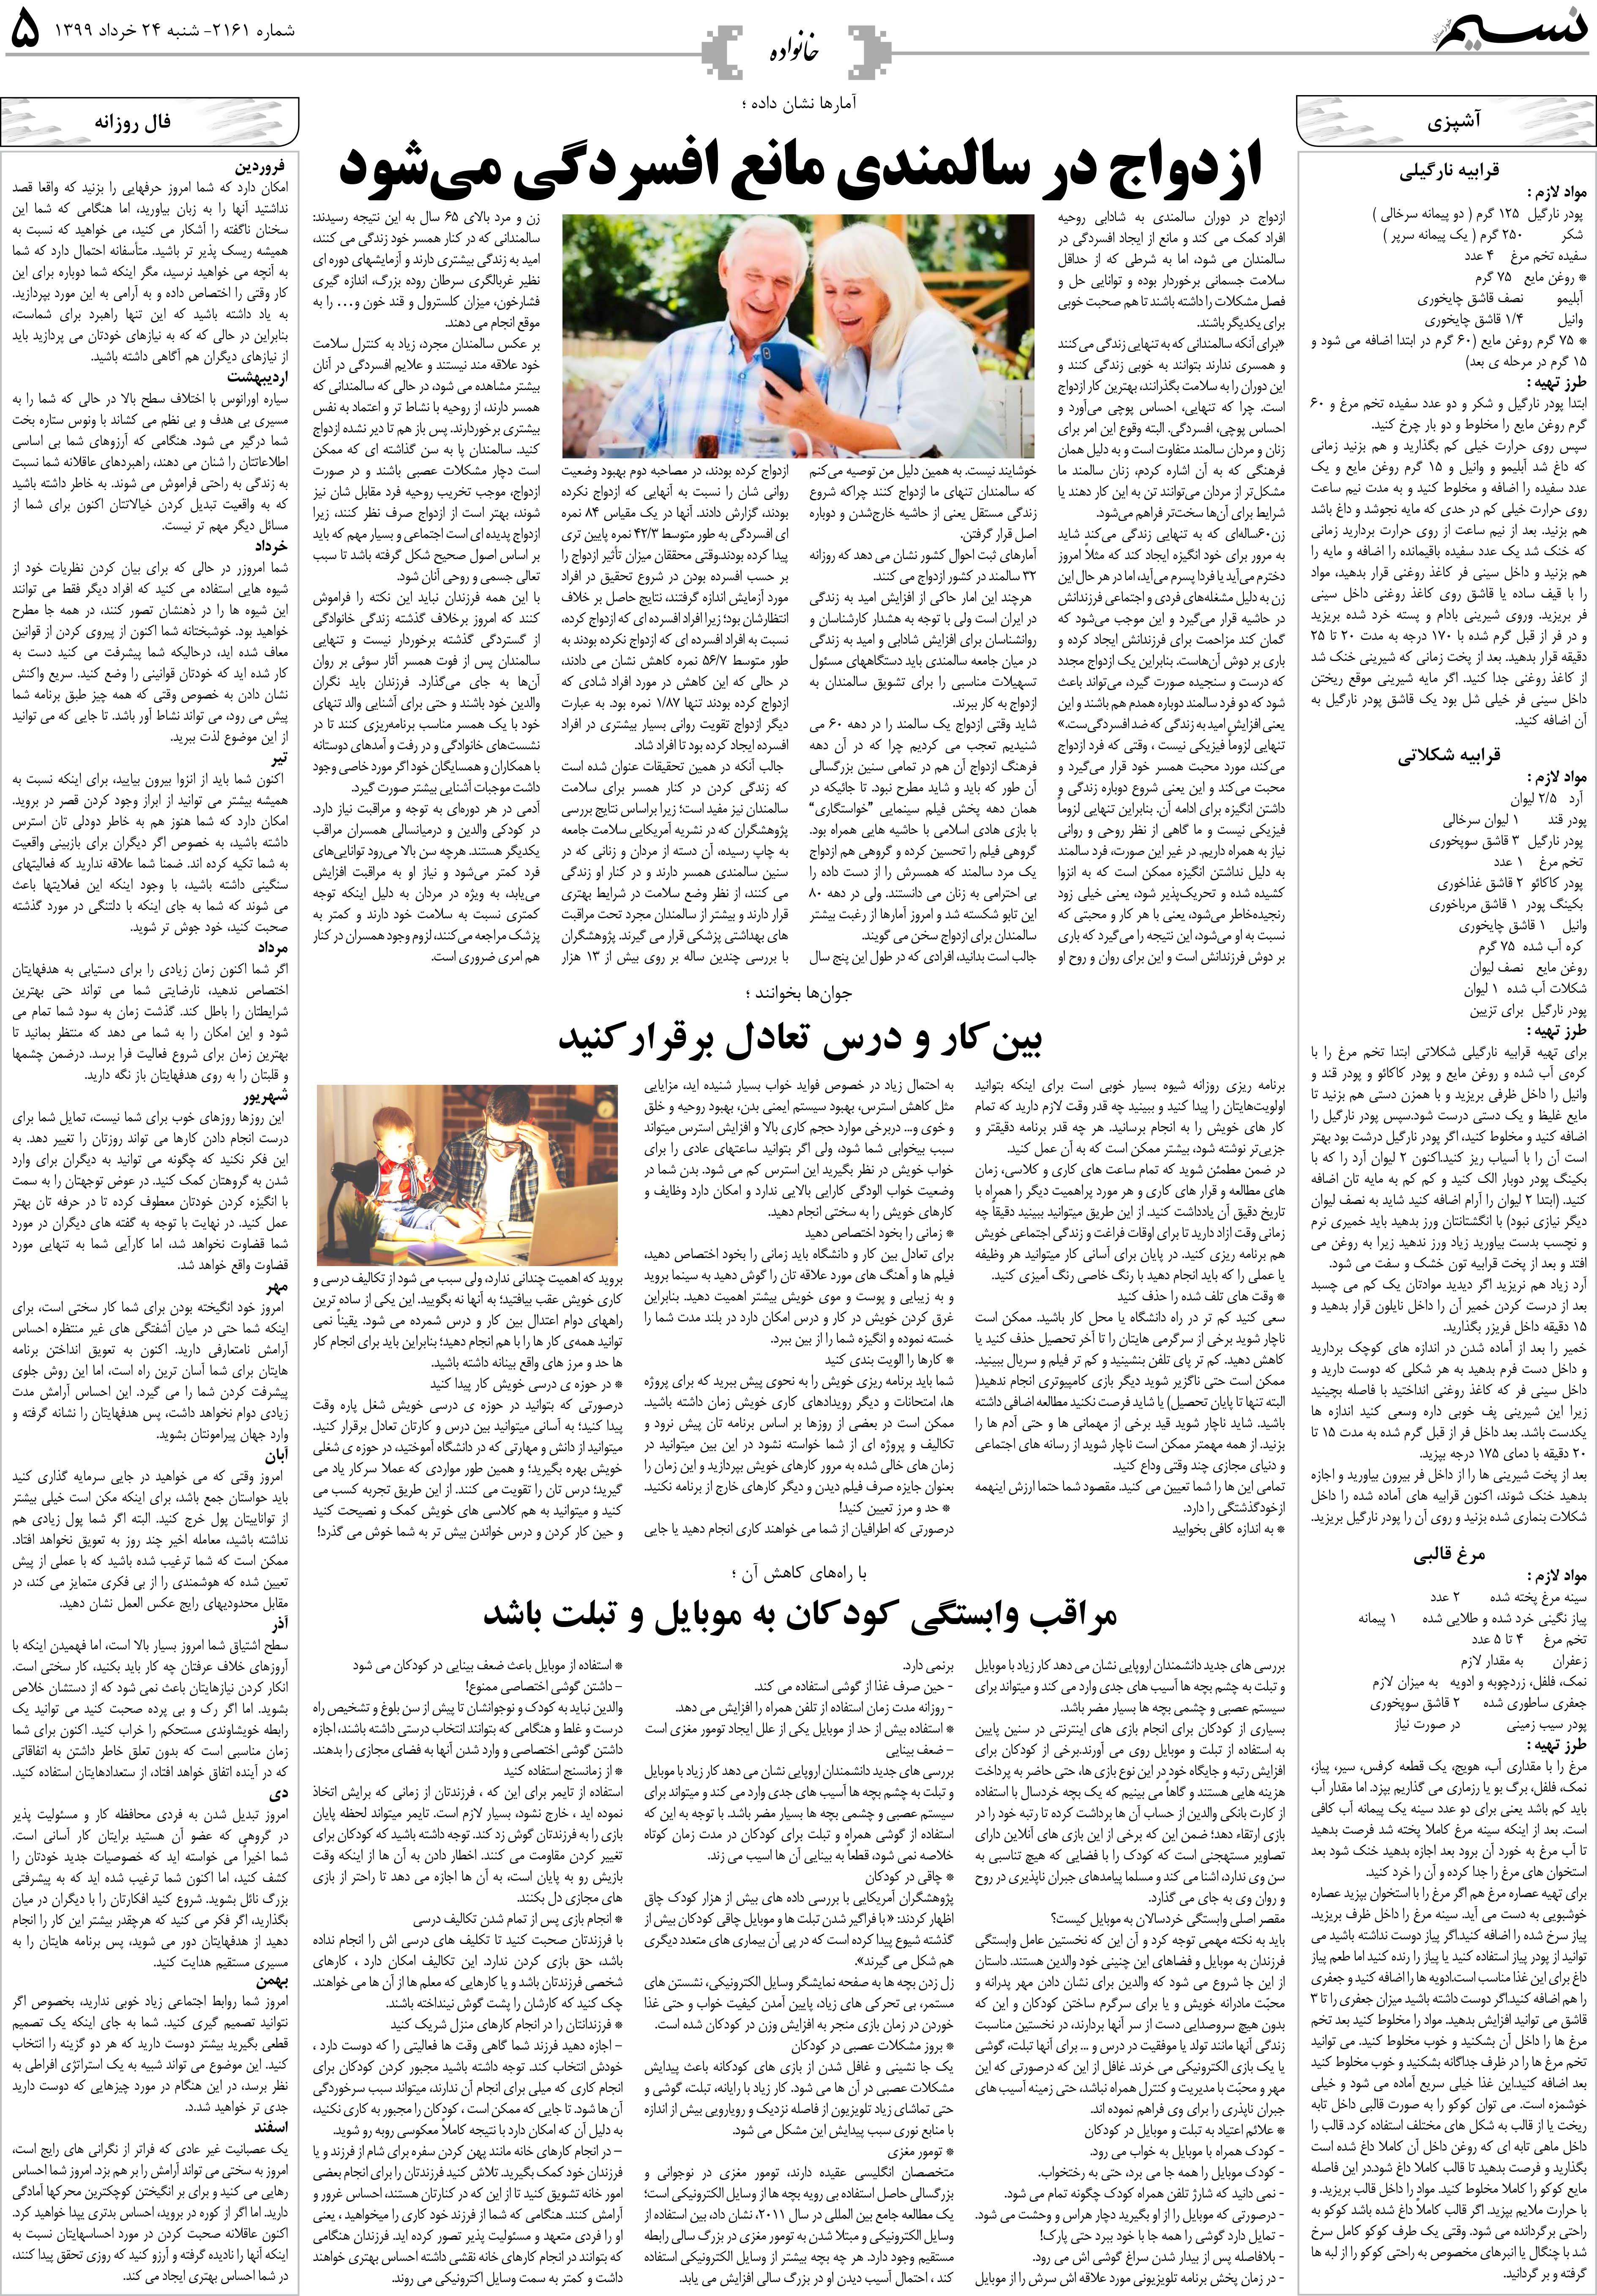 صفحه خانواده روزنامه نسیم شماره 2161